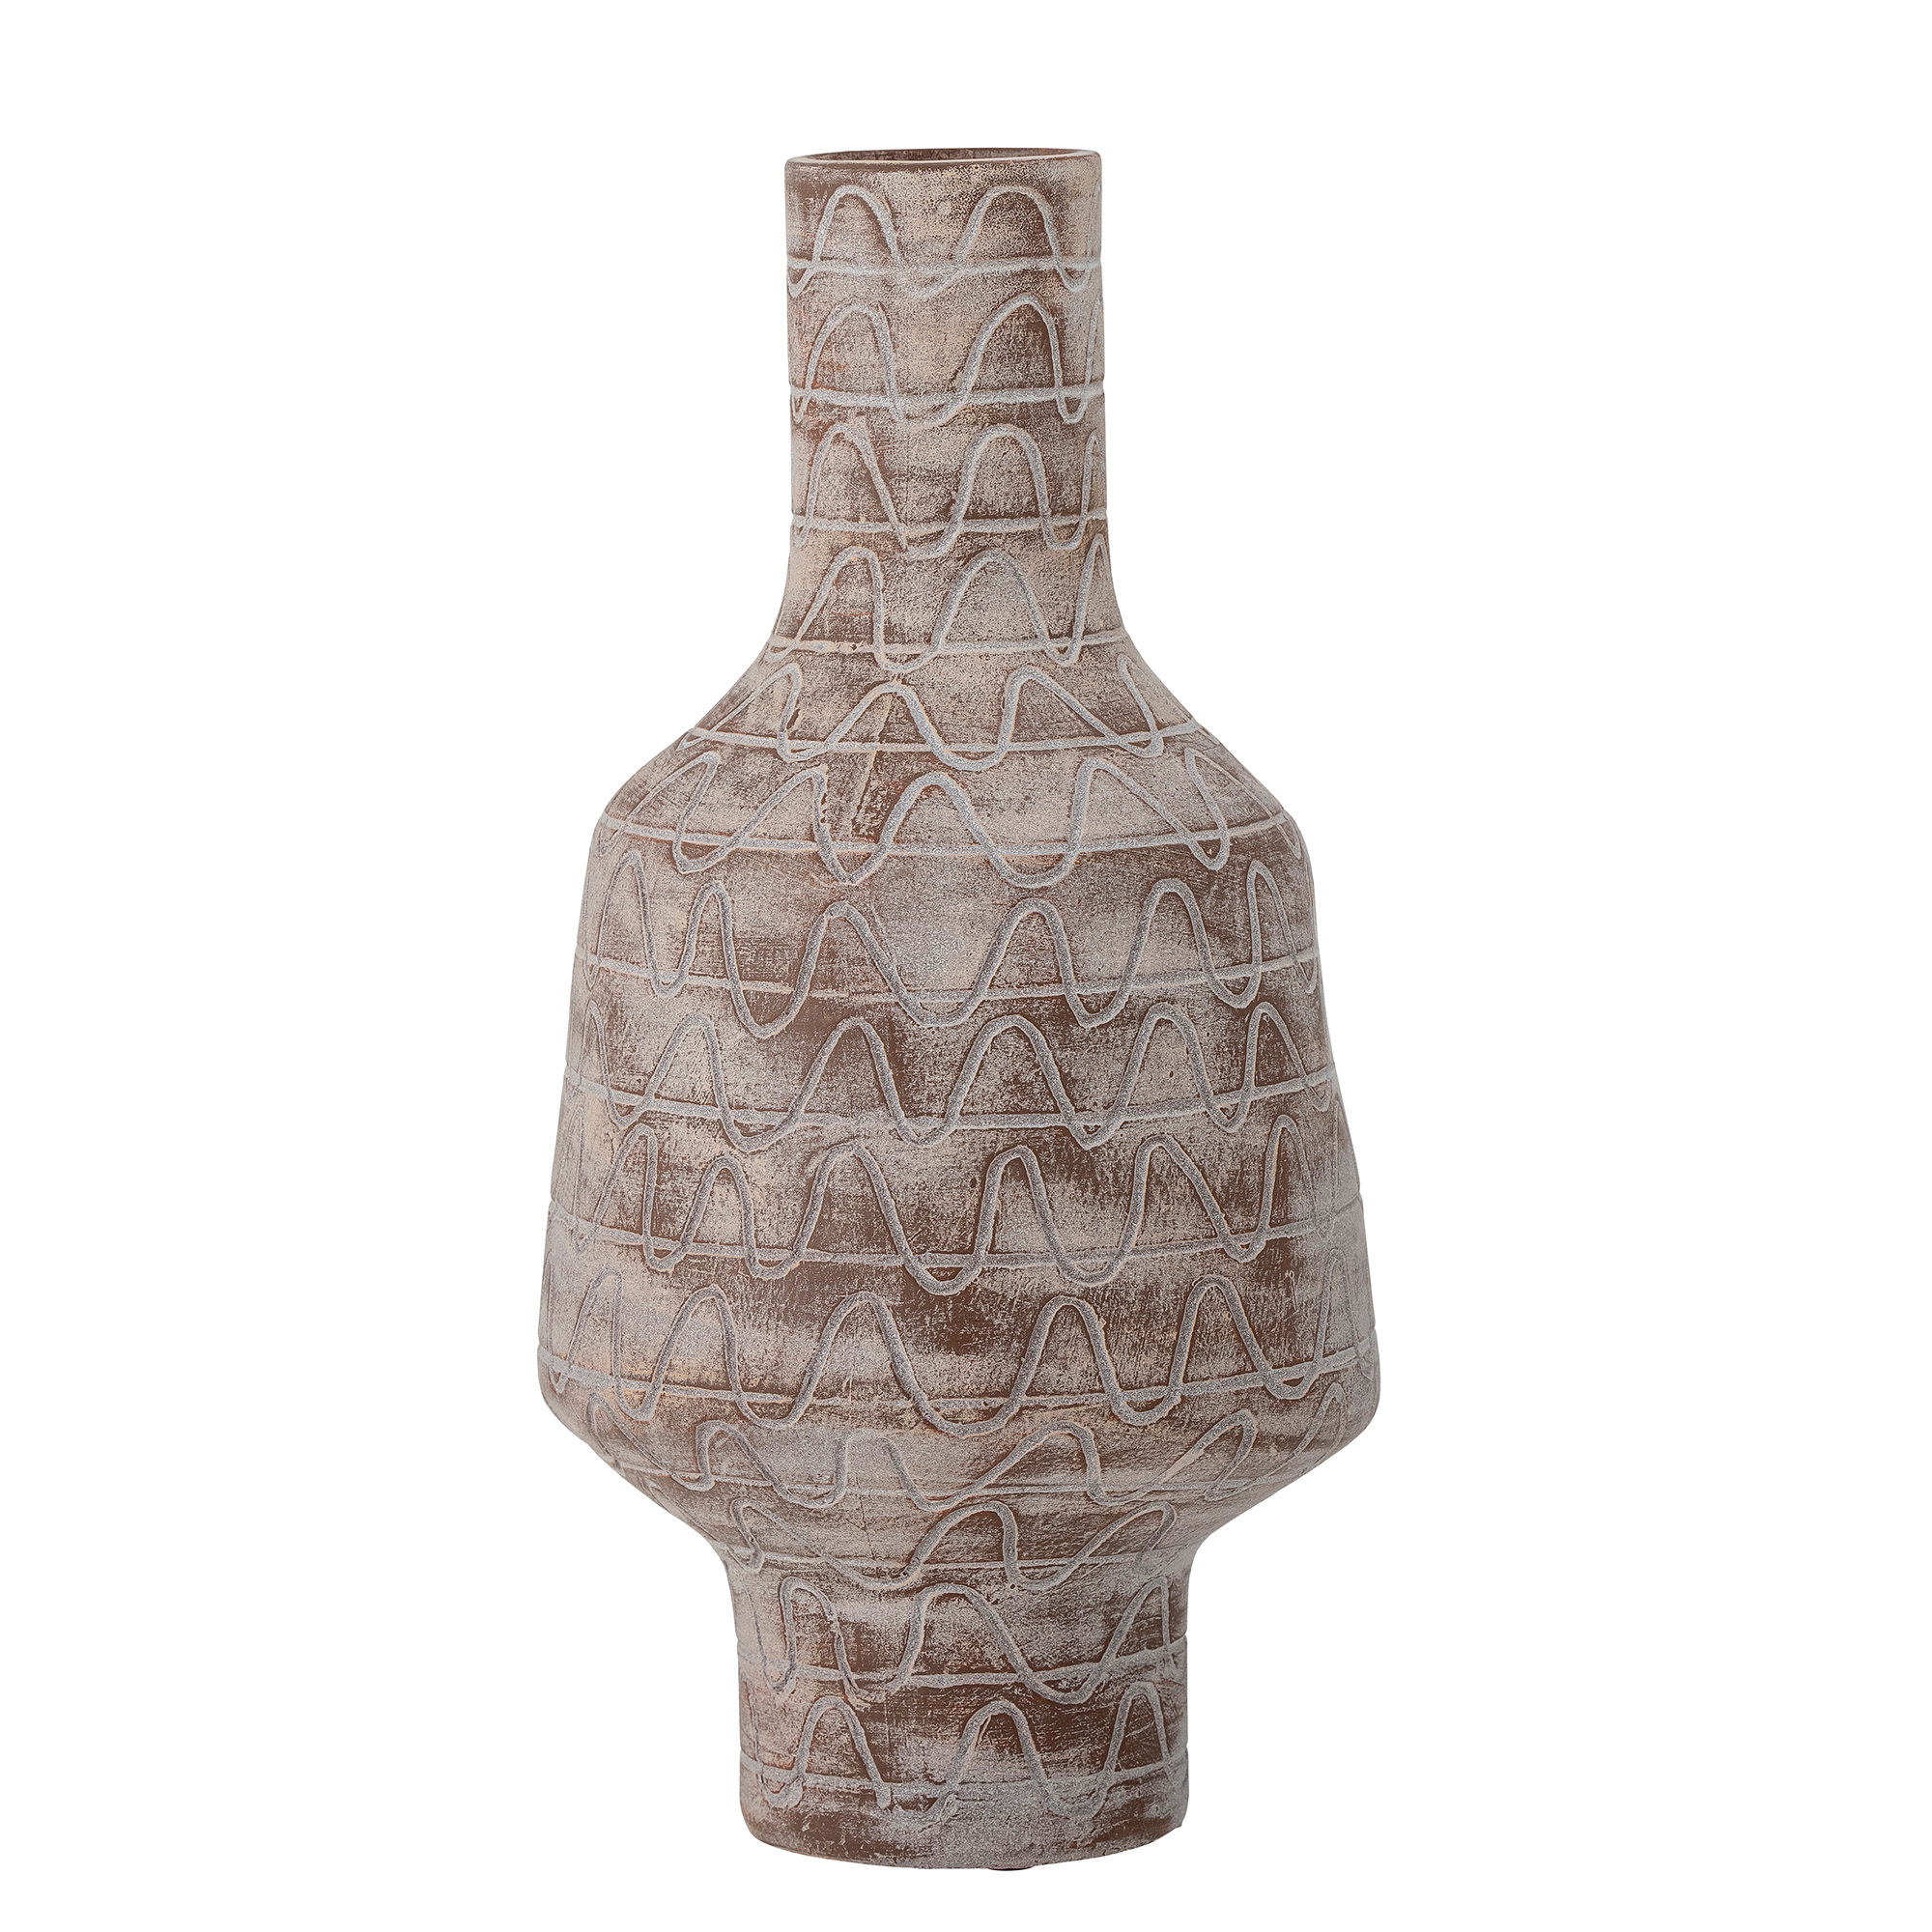 4: CREATIVE COLLECTION Saku Vase, Natur, Keramik